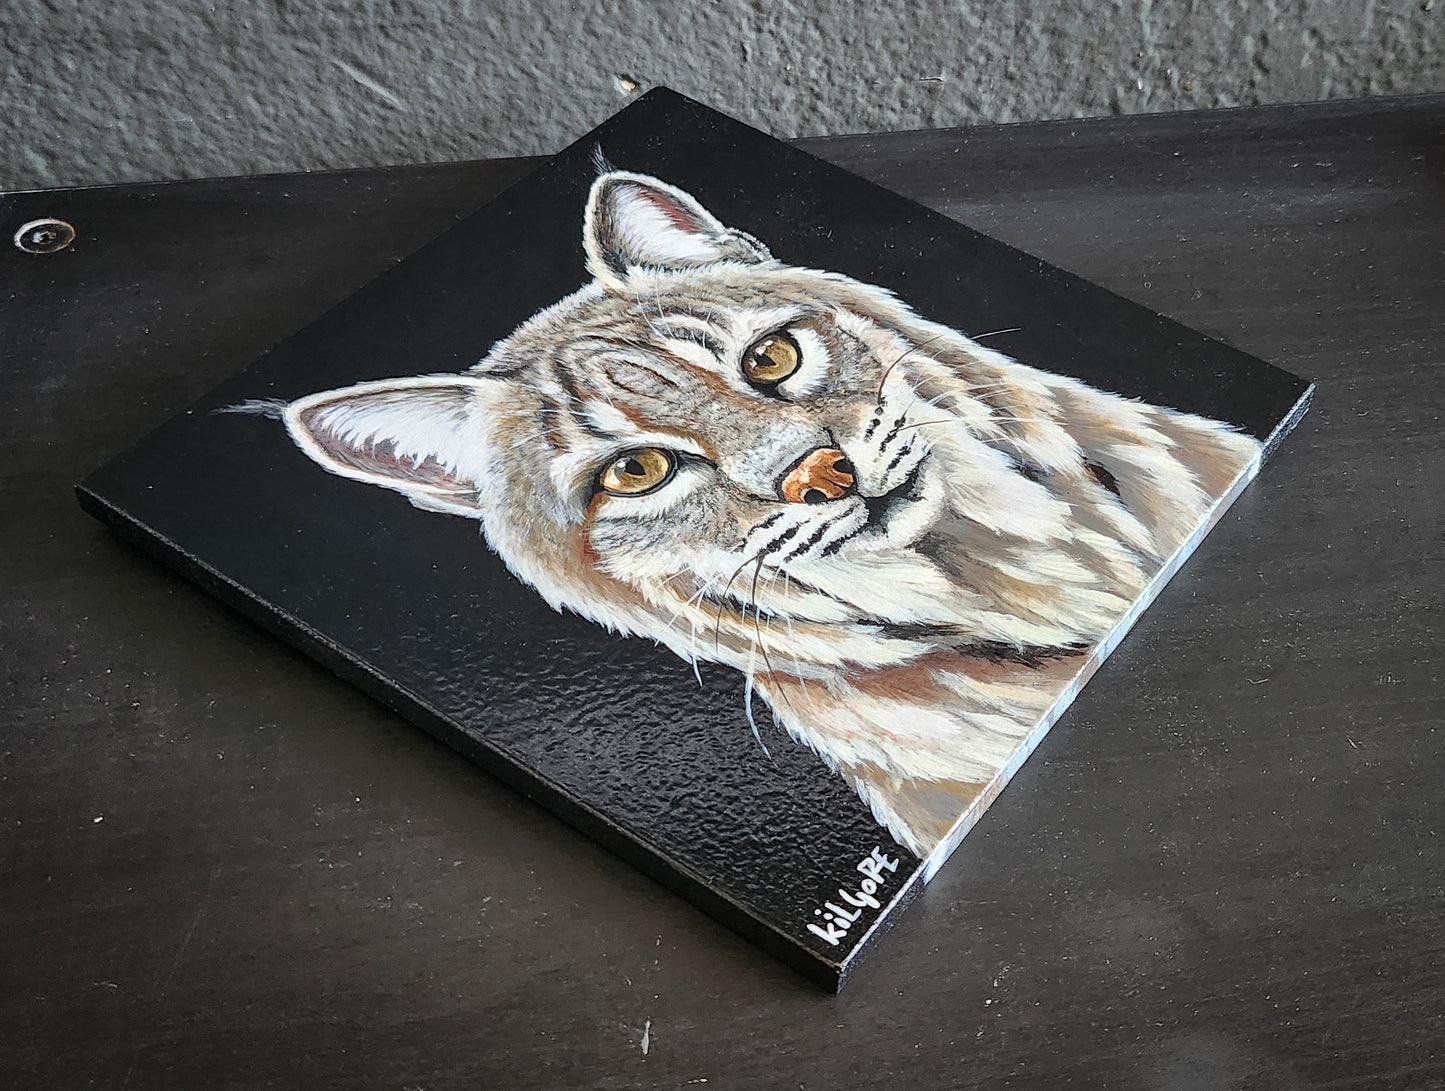 Bobcat - Original Acrylic Painting - By Kilgore, Original 7" x 7" Acrylic Painting on Wood, Lynx